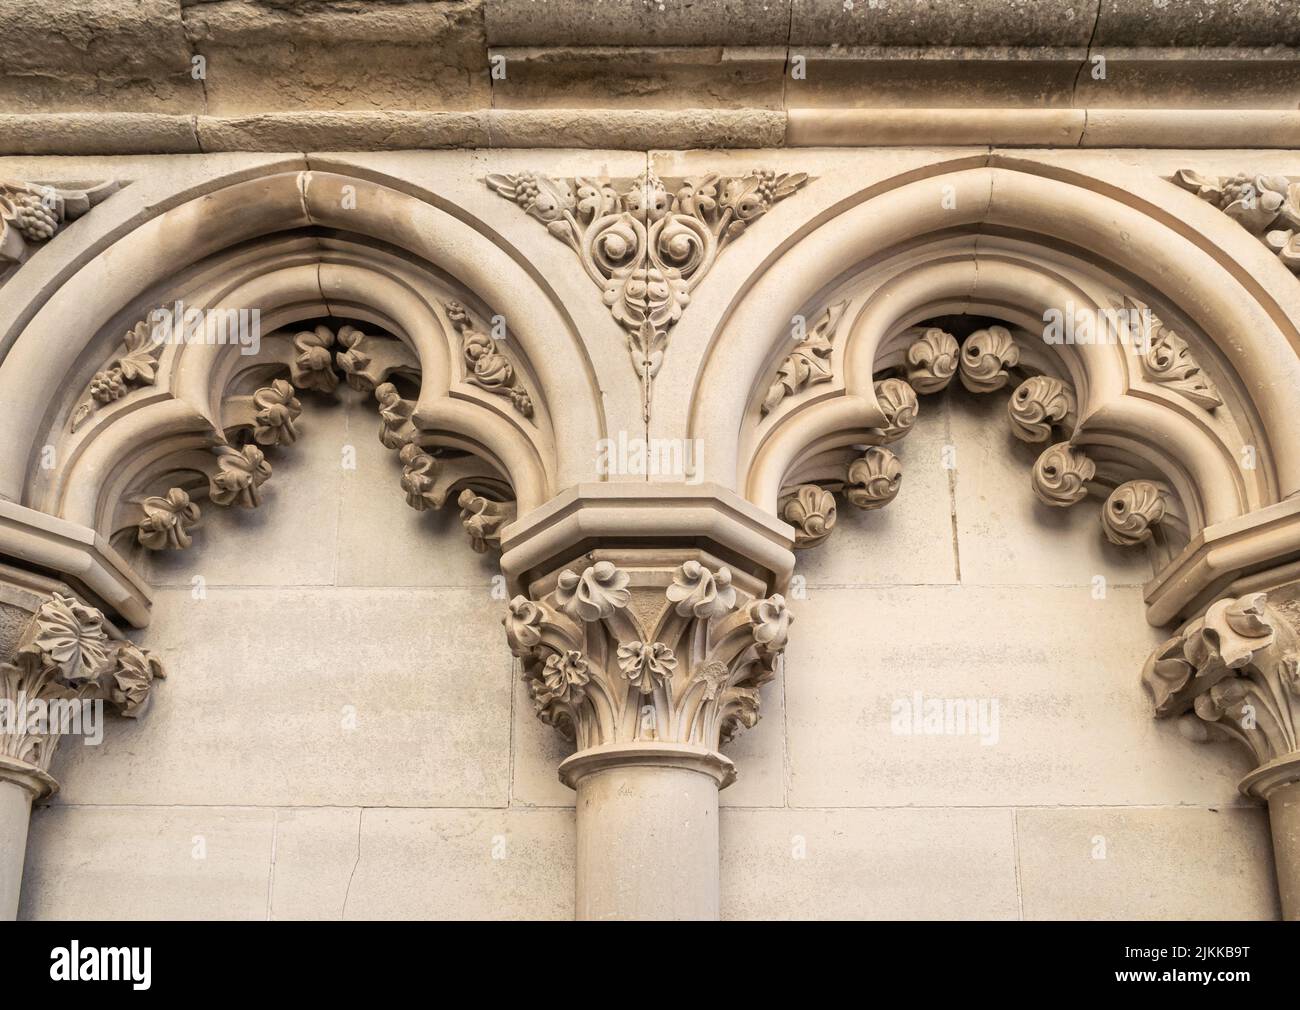 Detalle arquitectónico en la fachada exterior de la catedral gótica de Cuenca, España Stock Photo